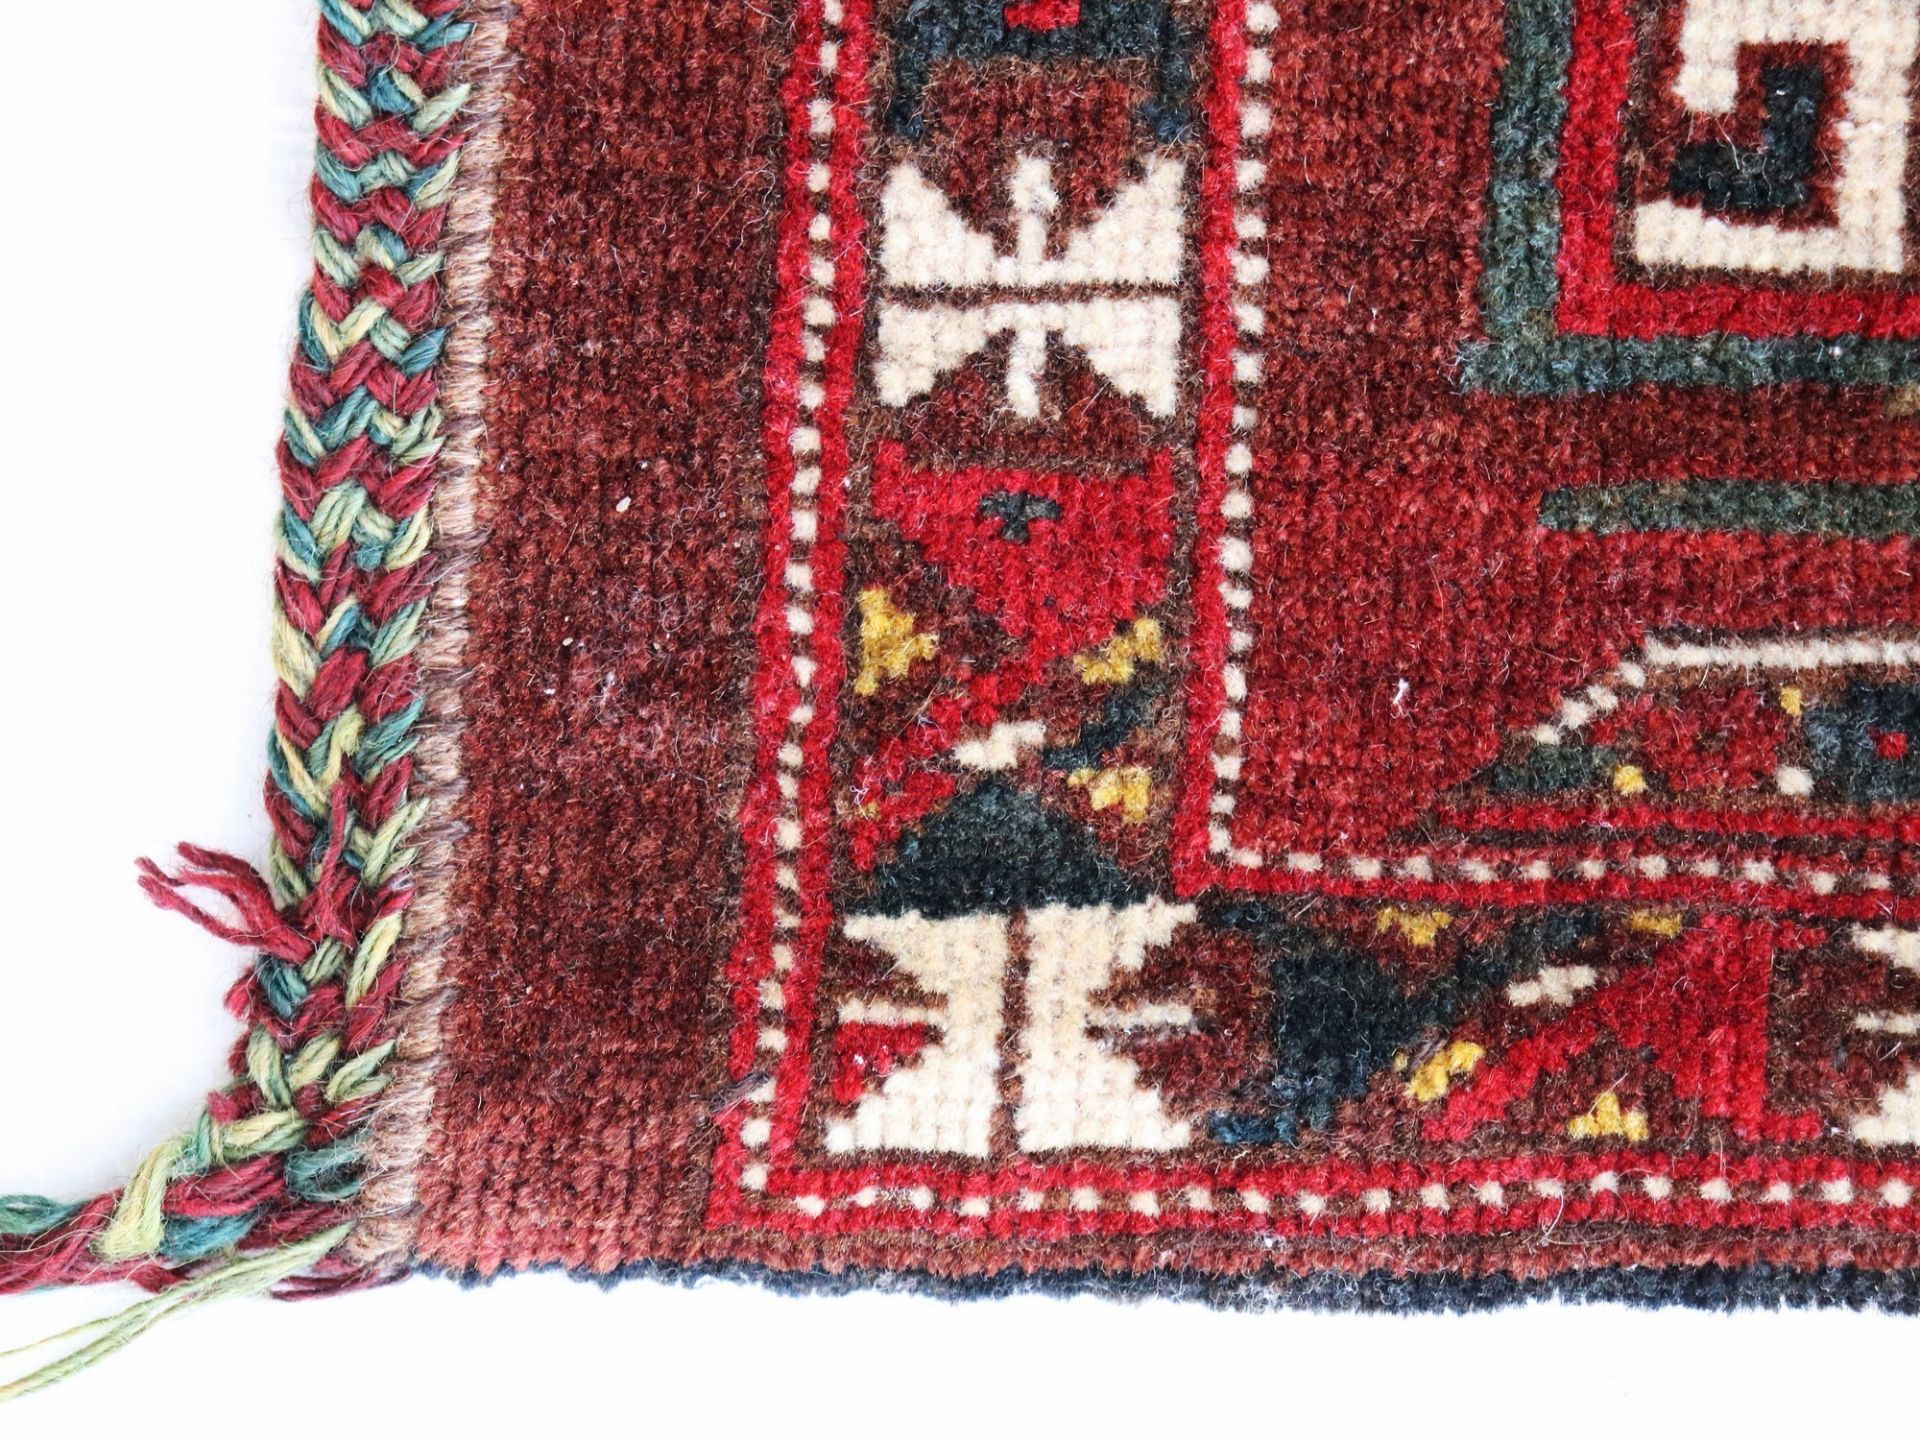 Satteltaschenfront Turkmenistan, Wolle, umgearbeitet, fortlaufendes Medaillonmotiv, rotgrundig, - Bild 5 aus 7